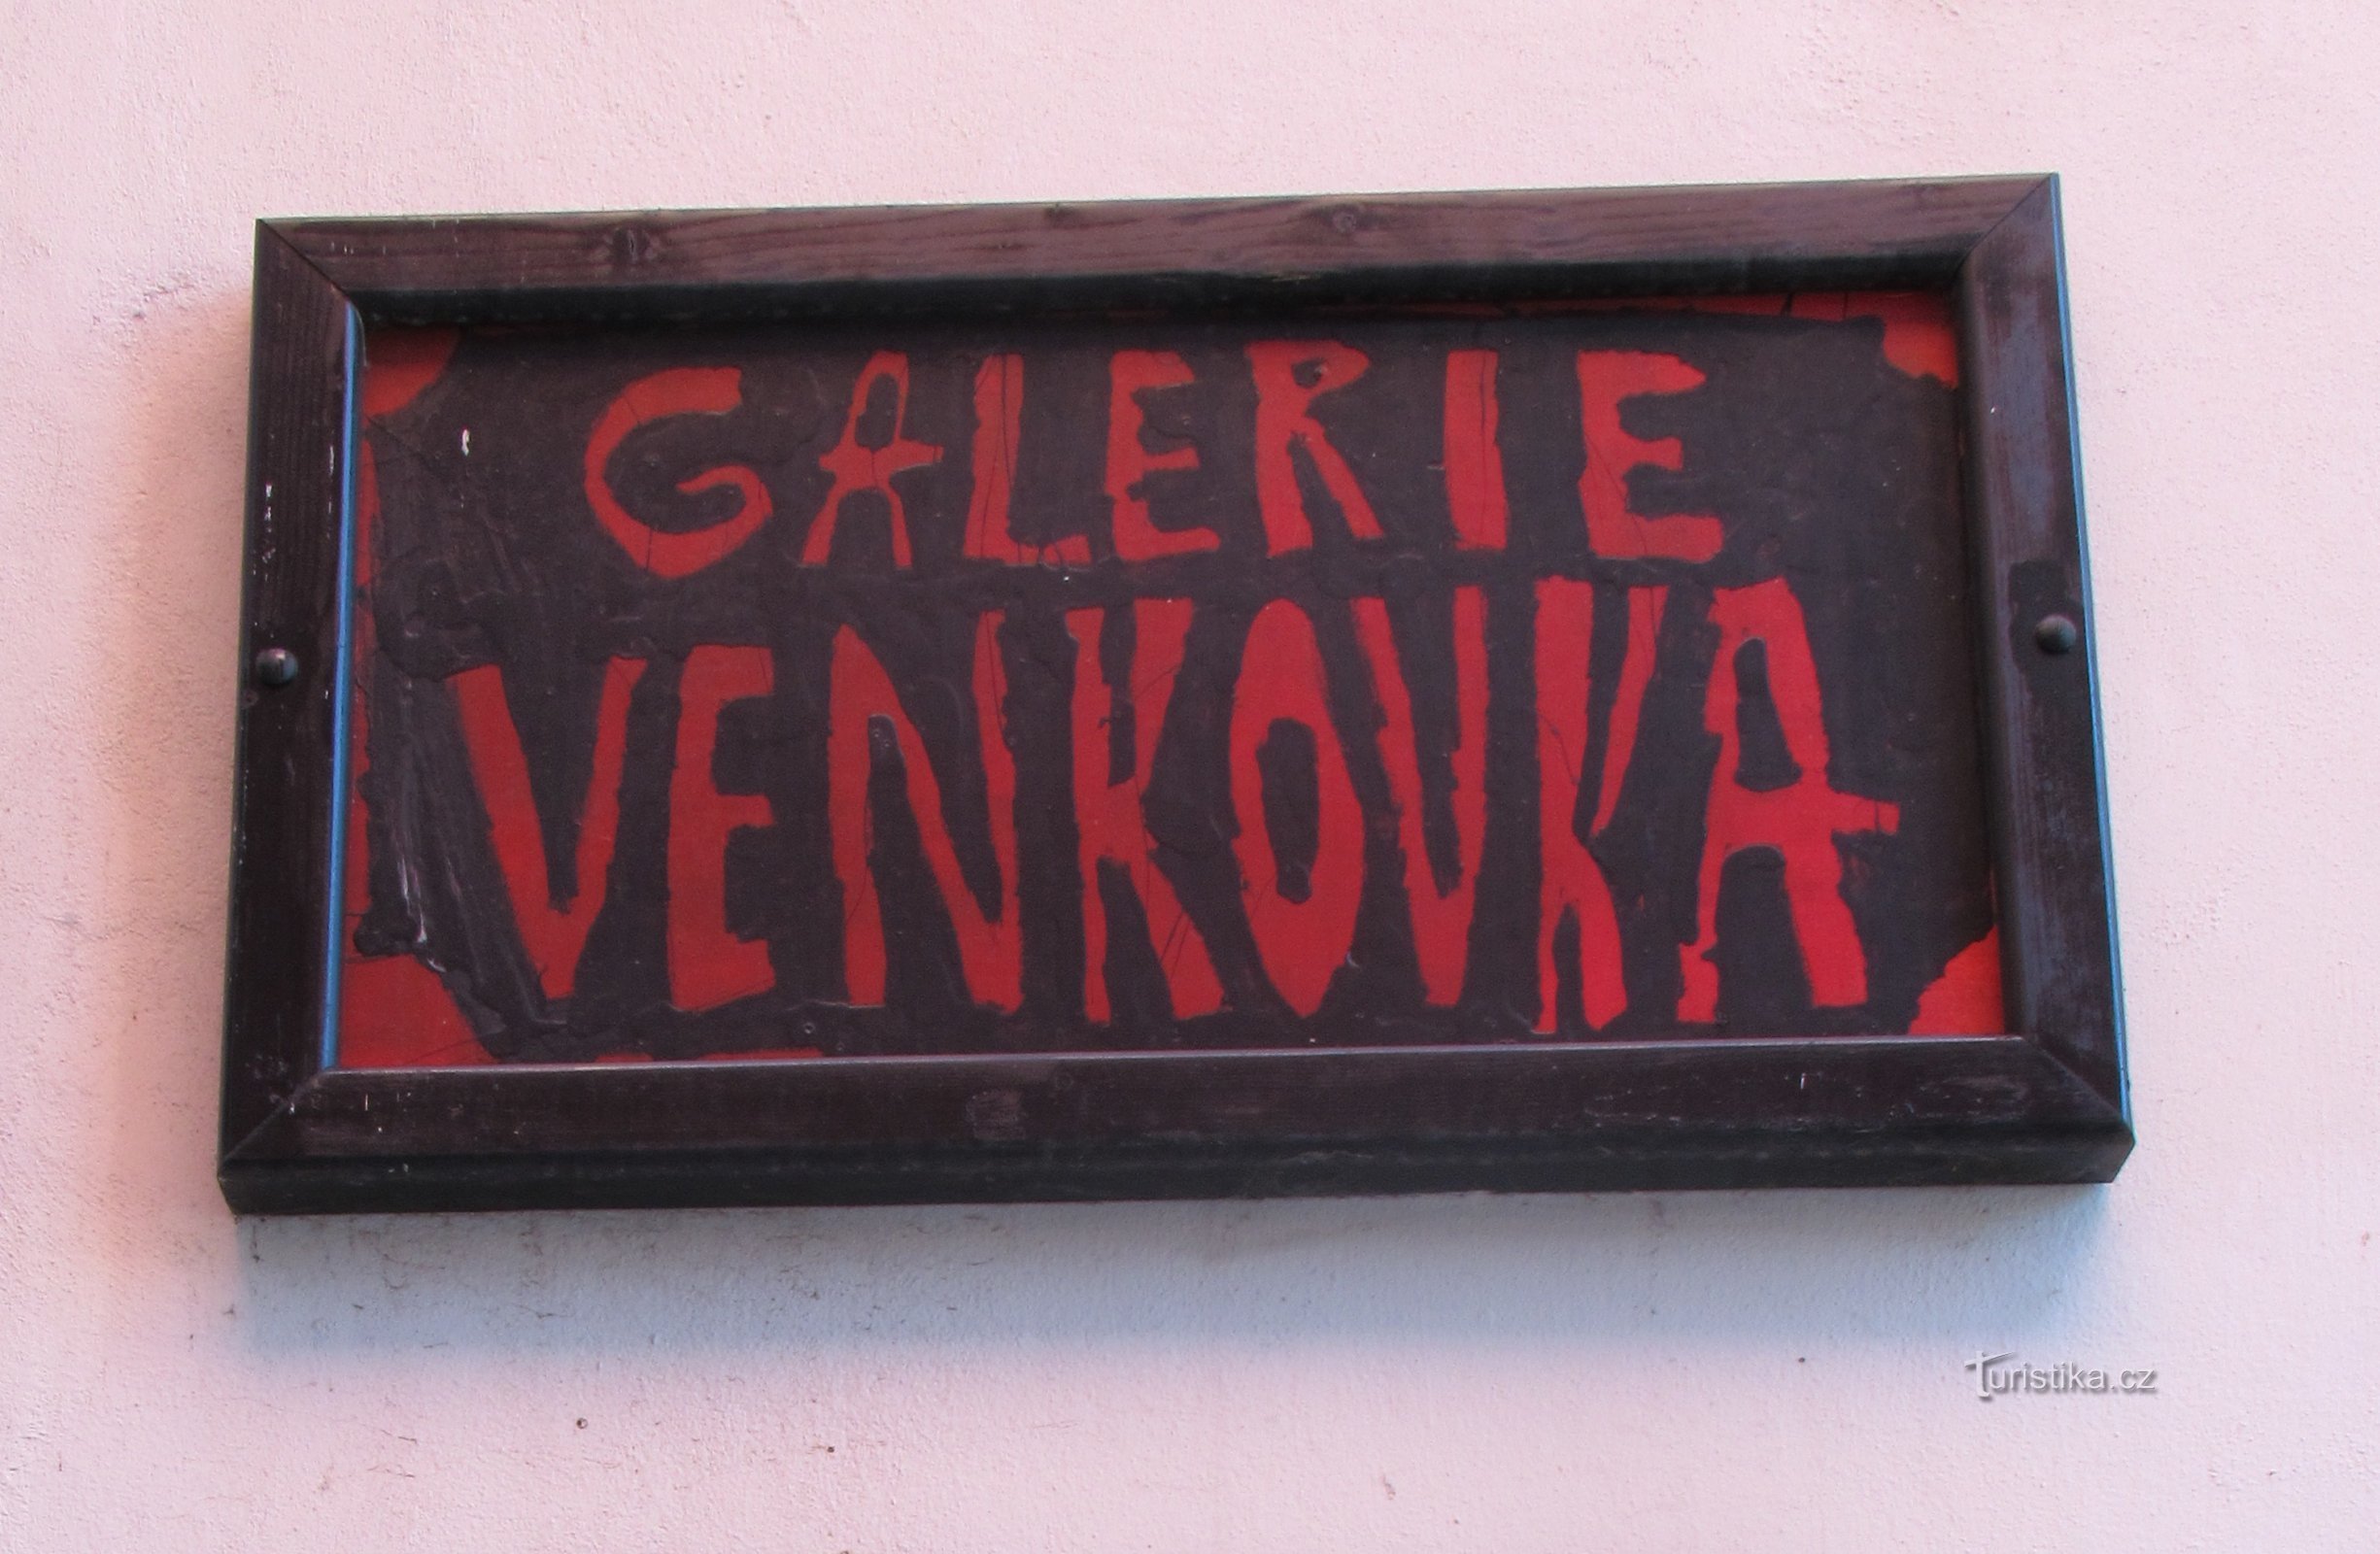 Svitavská Venkovka - tai maalauksia kaupungin kaduilla